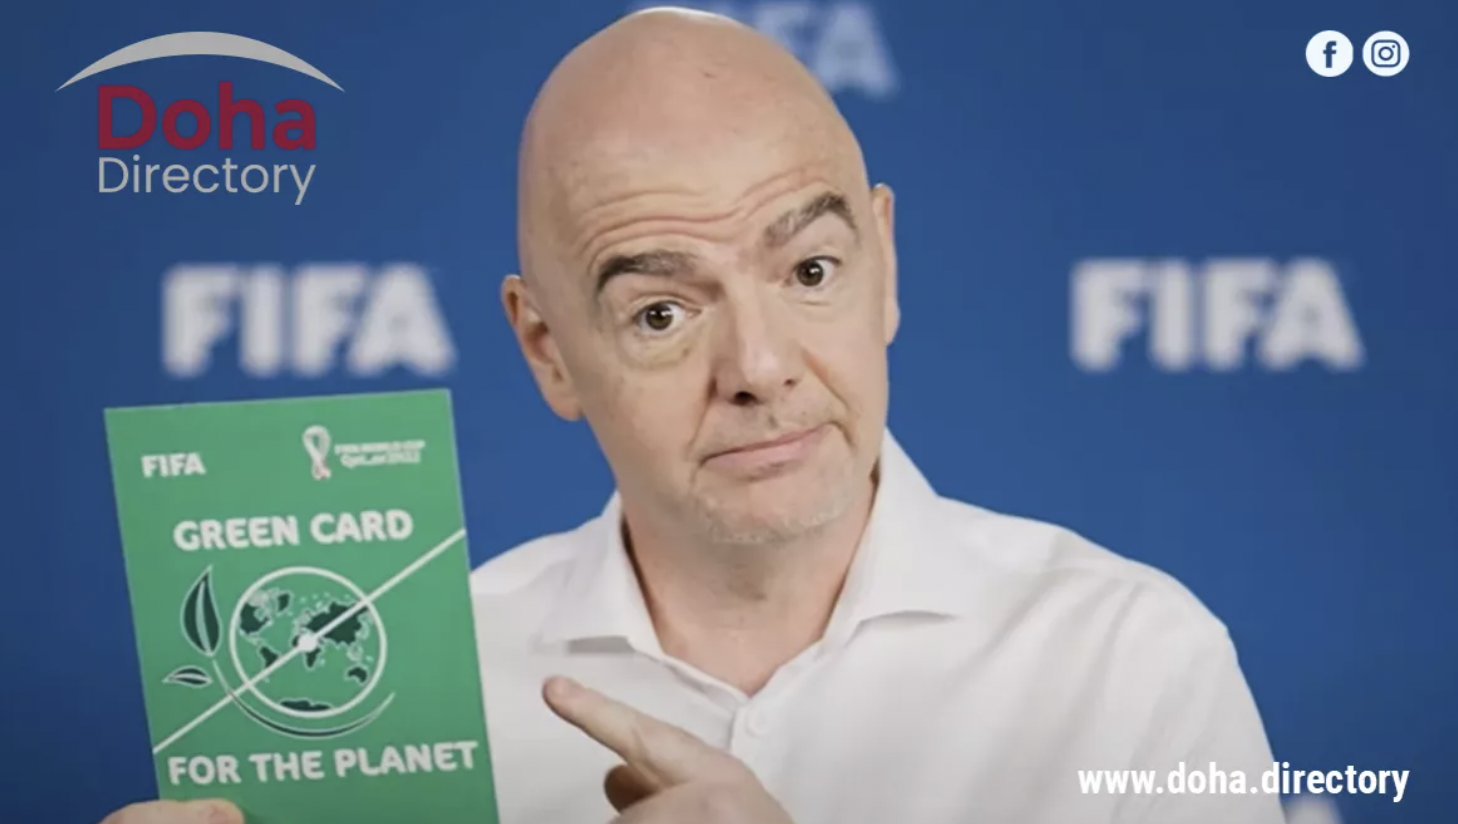 La FIFA acusada de 'lavado verde' al anular las afirmaciones de neutralidad en carbono de Qatar 2022